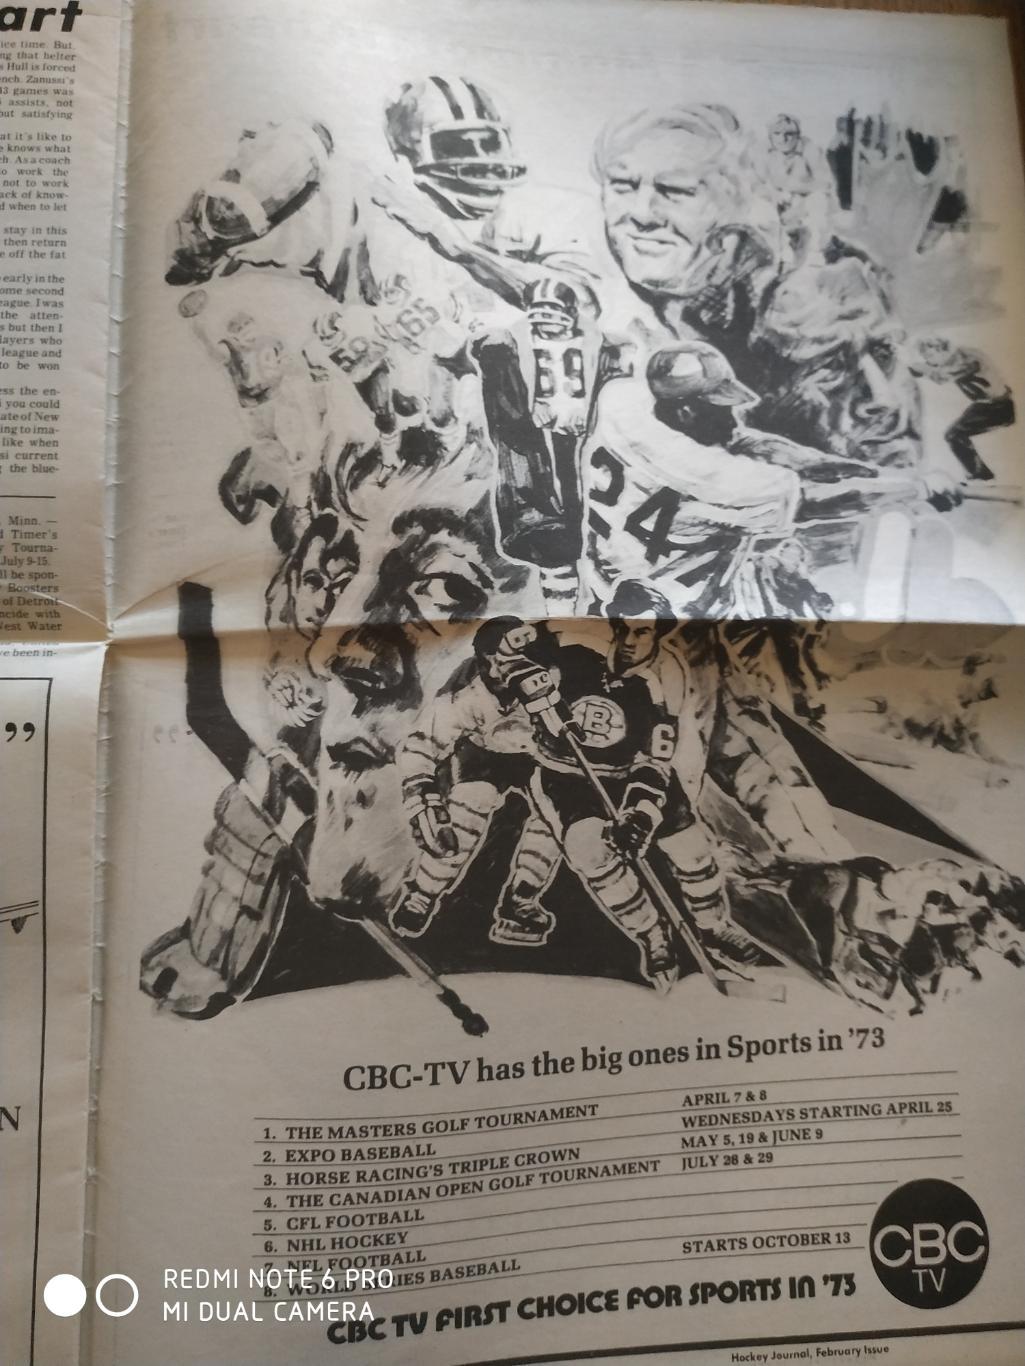 ХОККЕЙ ГАЗЕТА НХЛ NHL 1972 HOCKEY JOURNAL VOL.2 №5 2